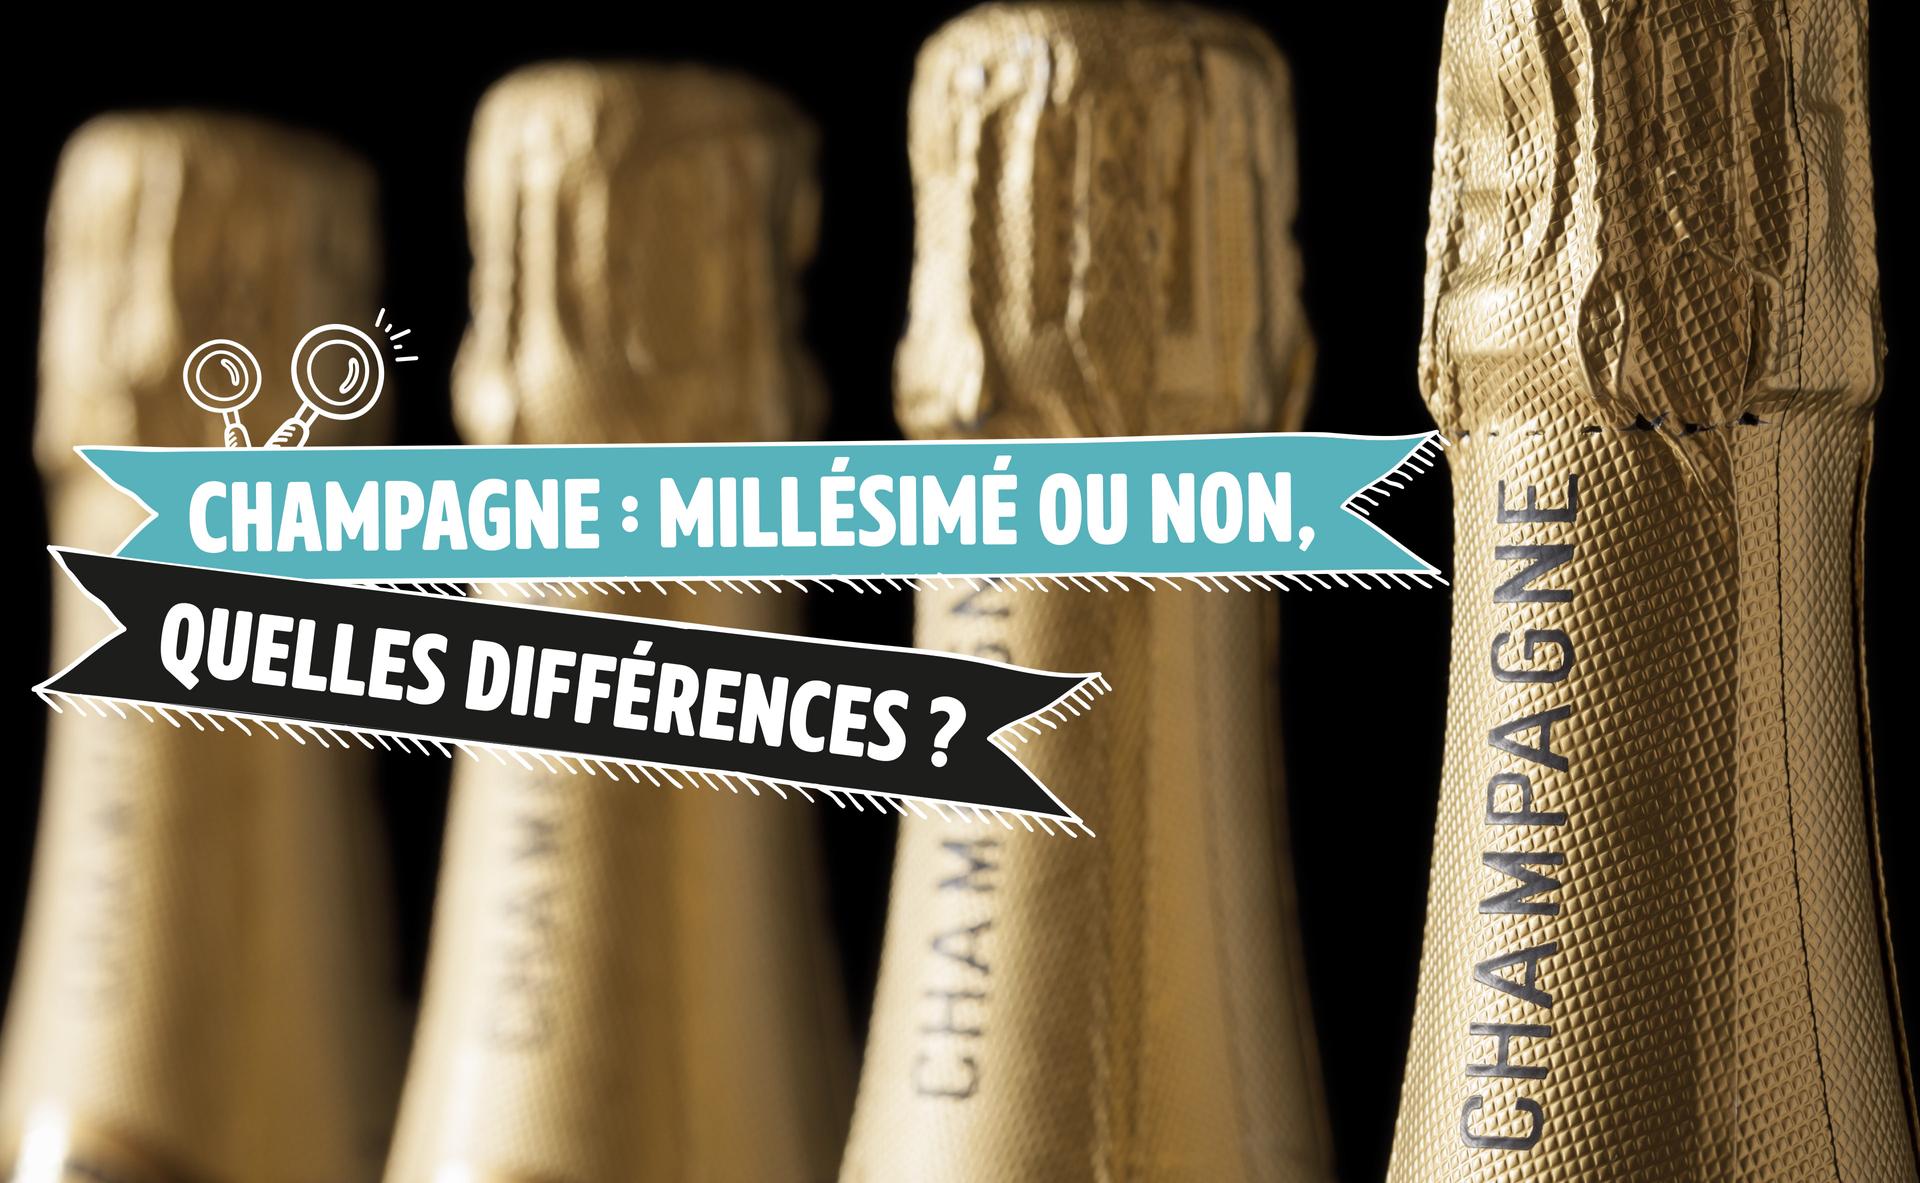 Champagne : millésimé ou non, quelles différences ?